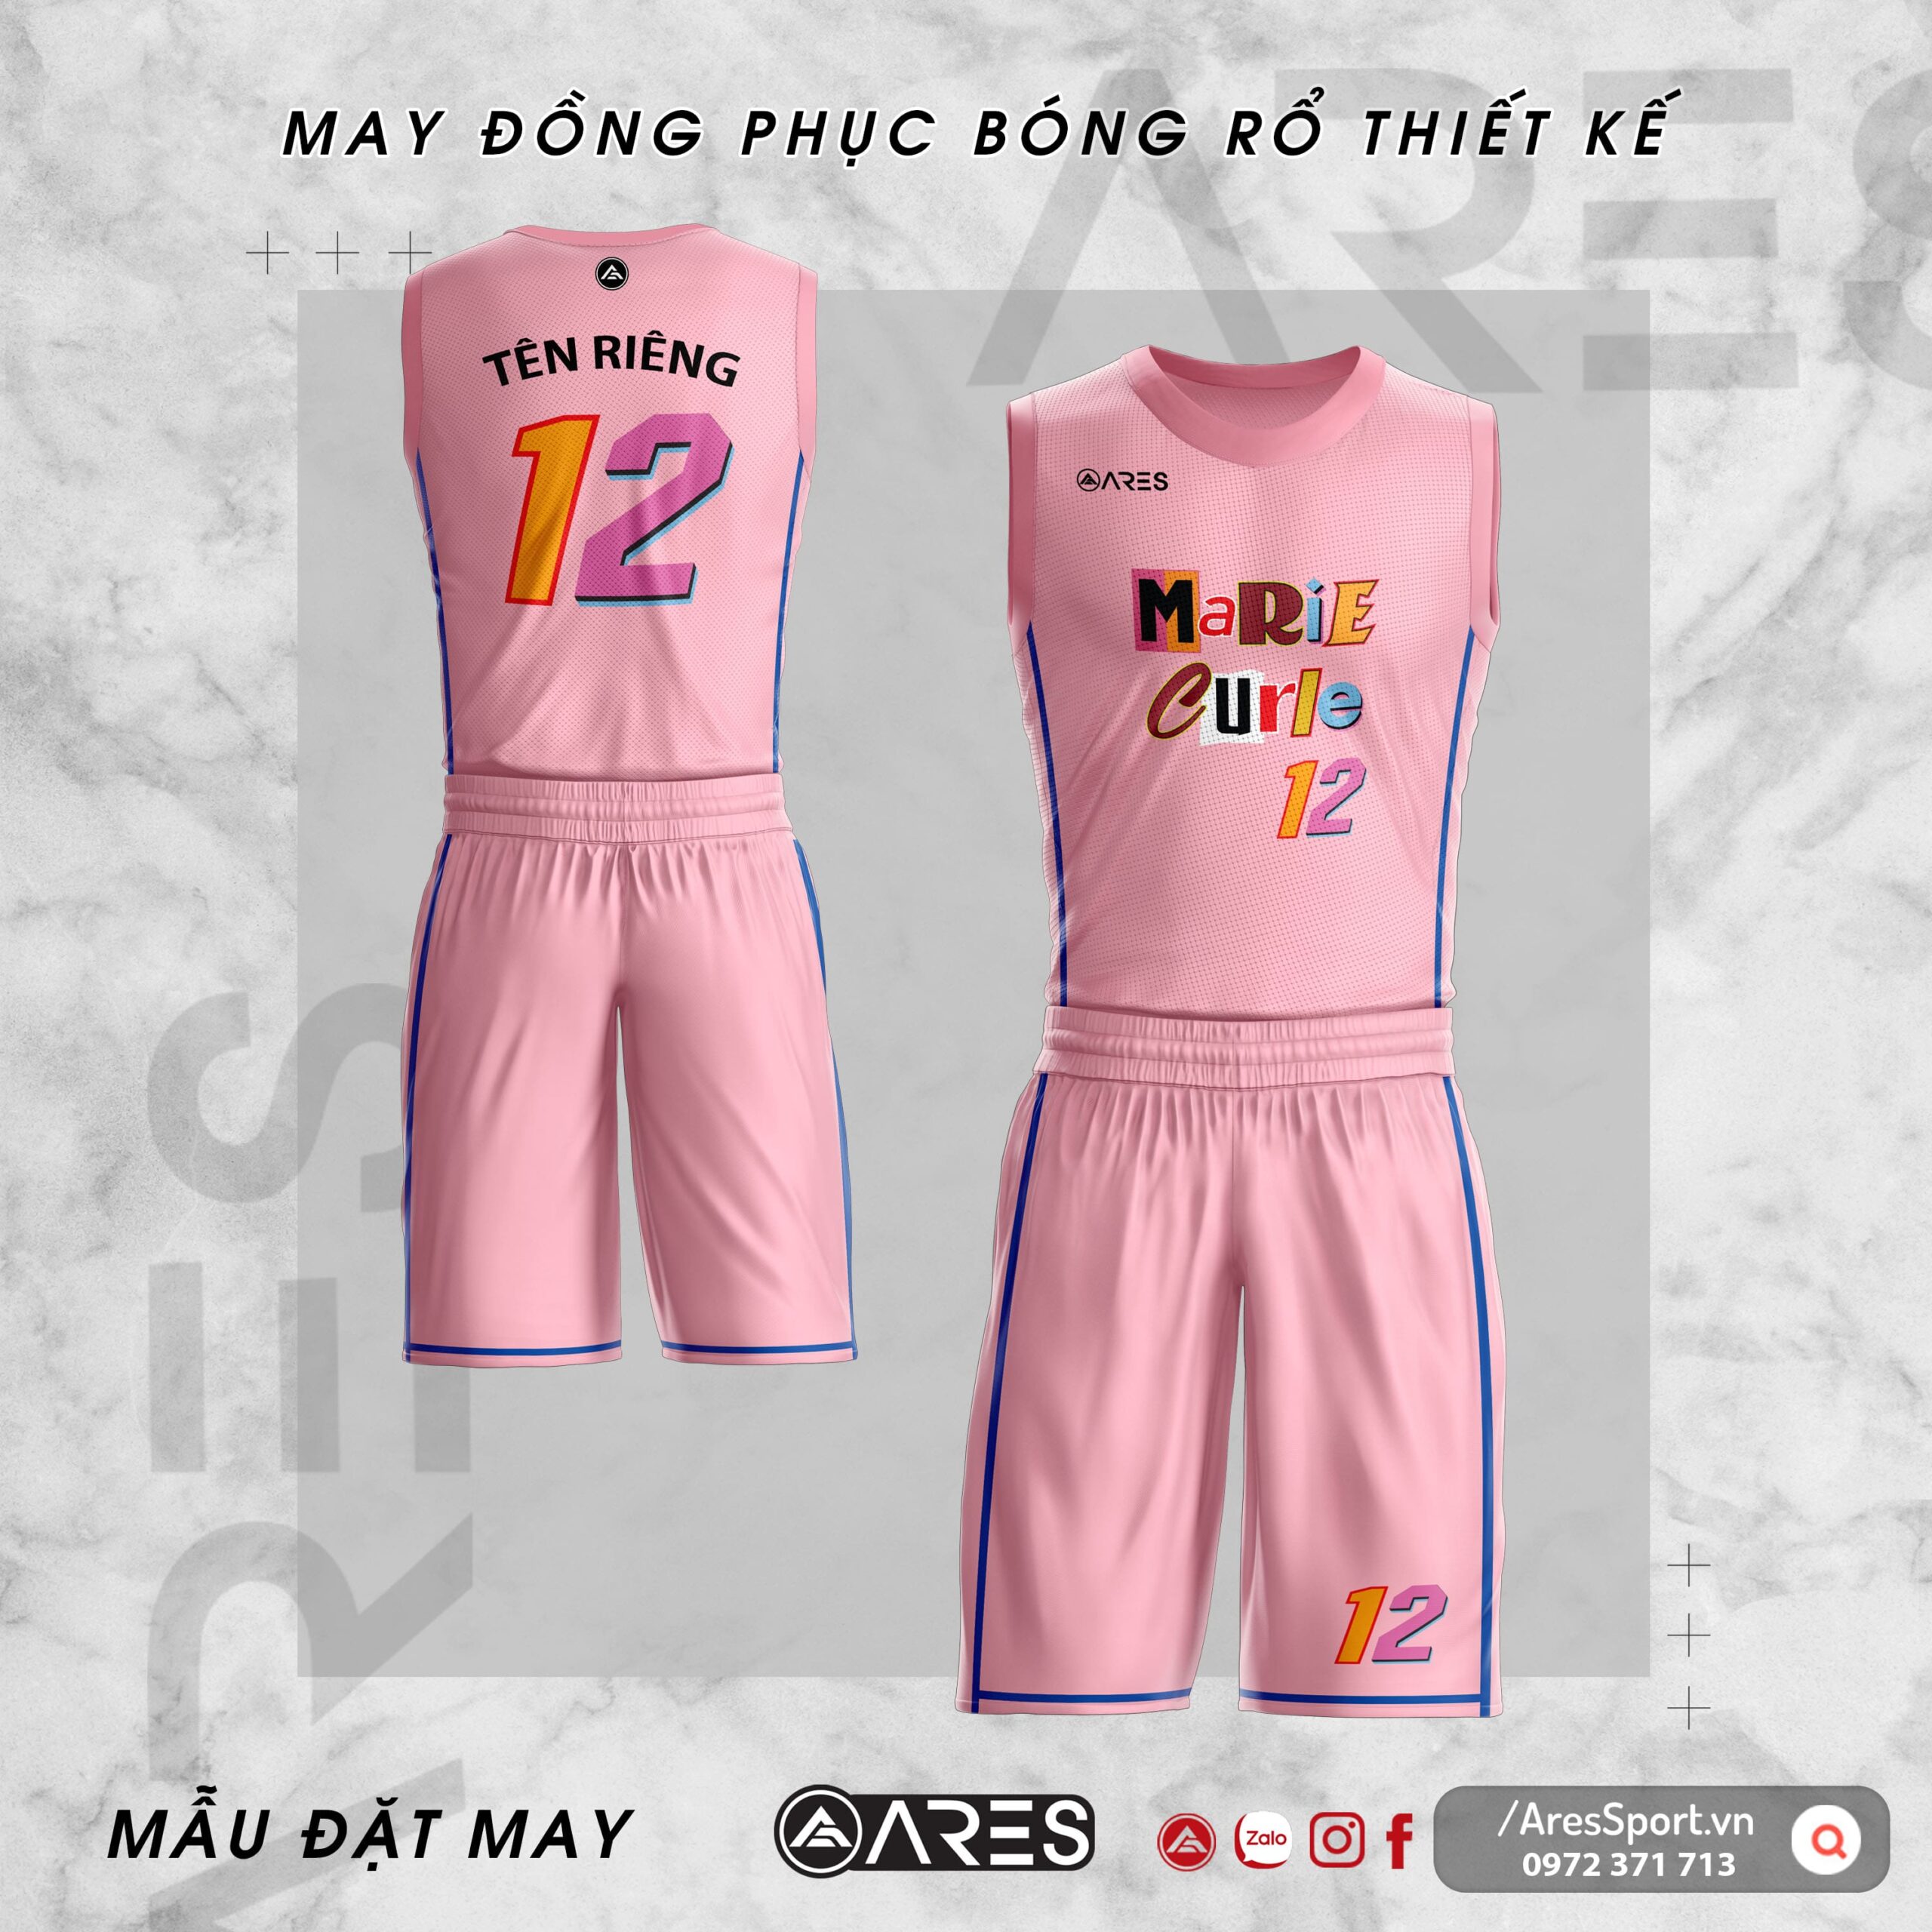 Áo đồng phục bóng rổ thiết kế Marie Curie Hồng đáng yêu